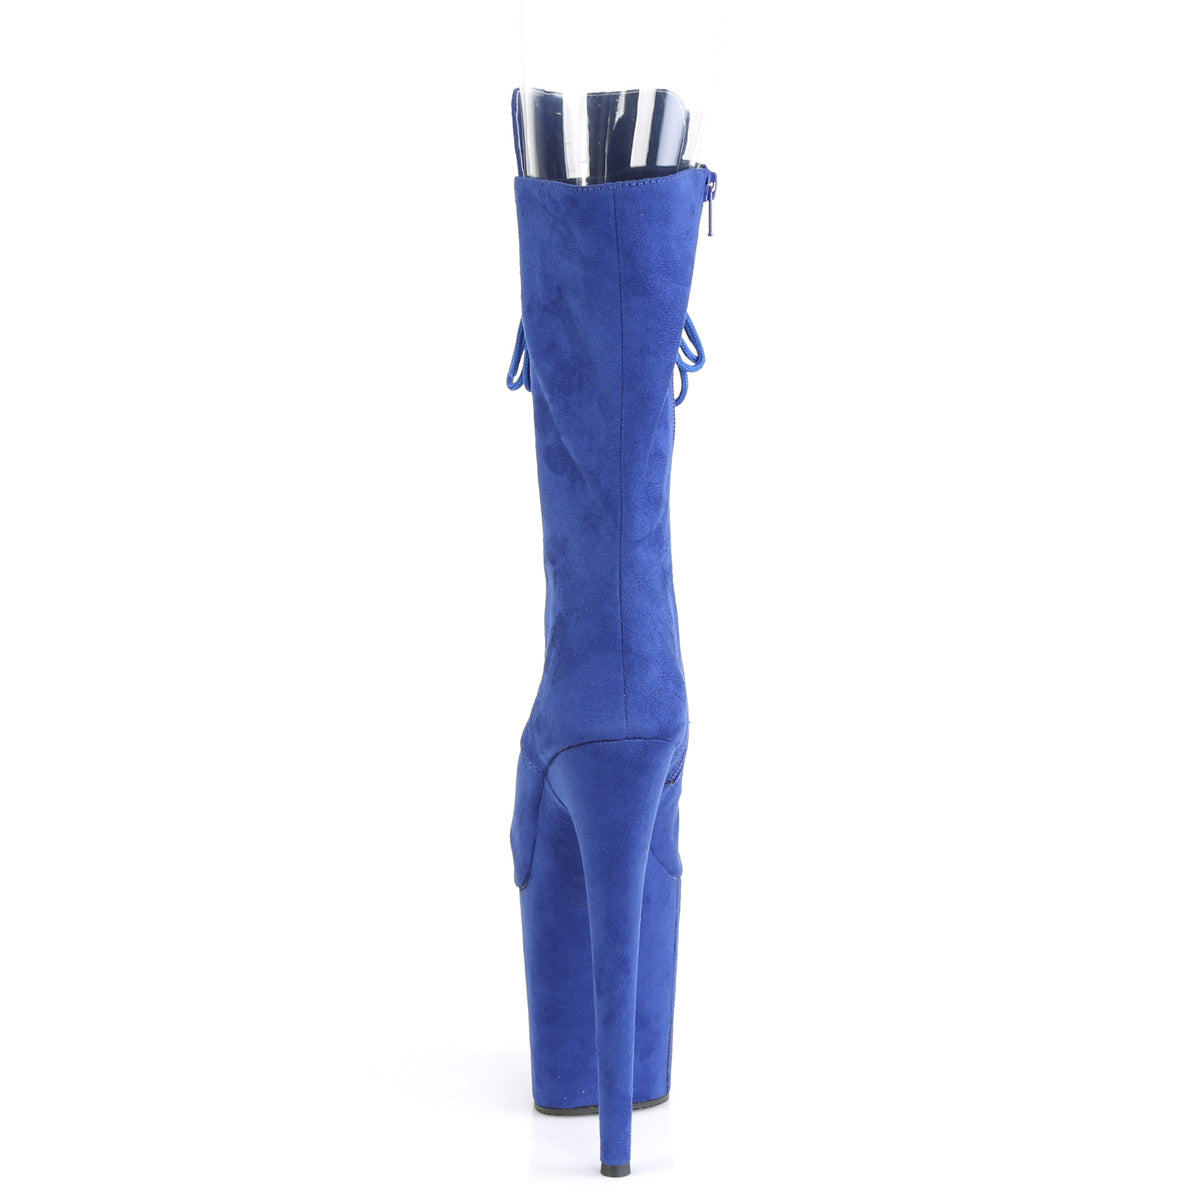 Pleaser Botas de tobillo para mujer FLAMINGO-1051FS Royal Blue Faux Suede / Royal Blue Faux Suede